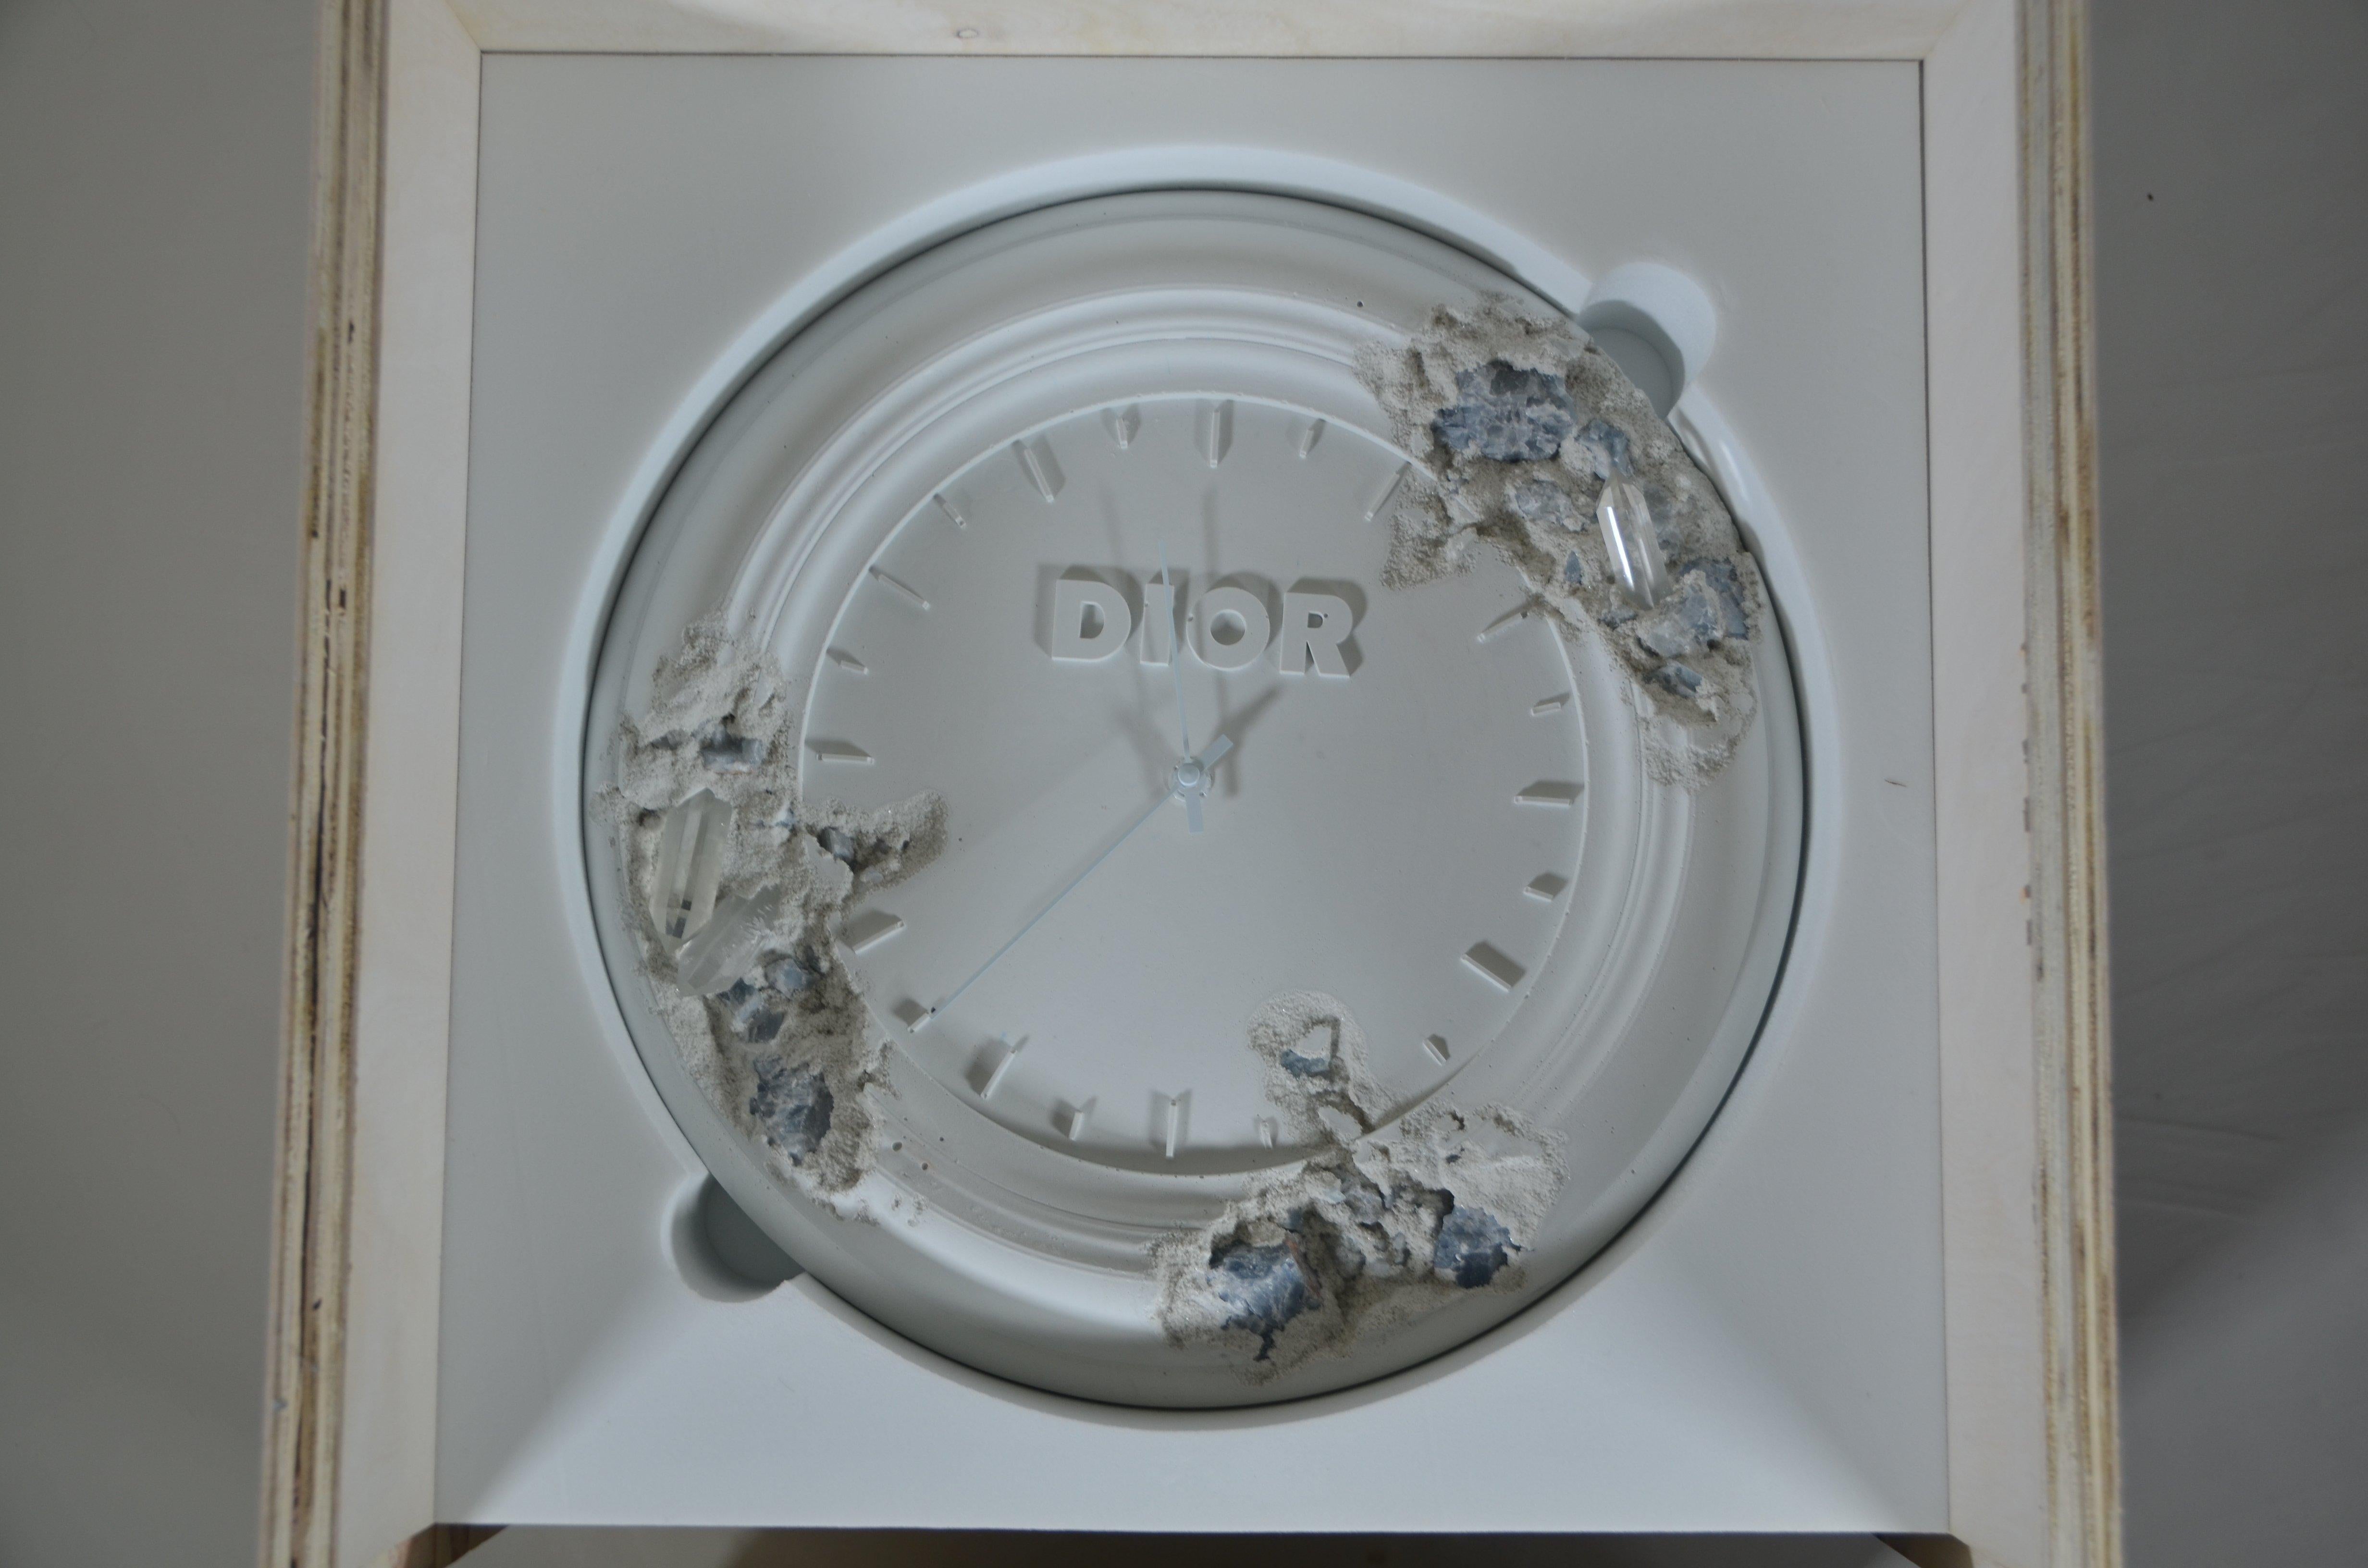 Lors du défilé masculin de l'été 2020, Daniel Arsham a transformé l'horloge de l'atelier de Christian Dior en une sculpture fonctionnelle.  
Érodée à plusieurs endroits comme si elle avait été ravagée par le temps, cette véritable œuvre d'art ornée